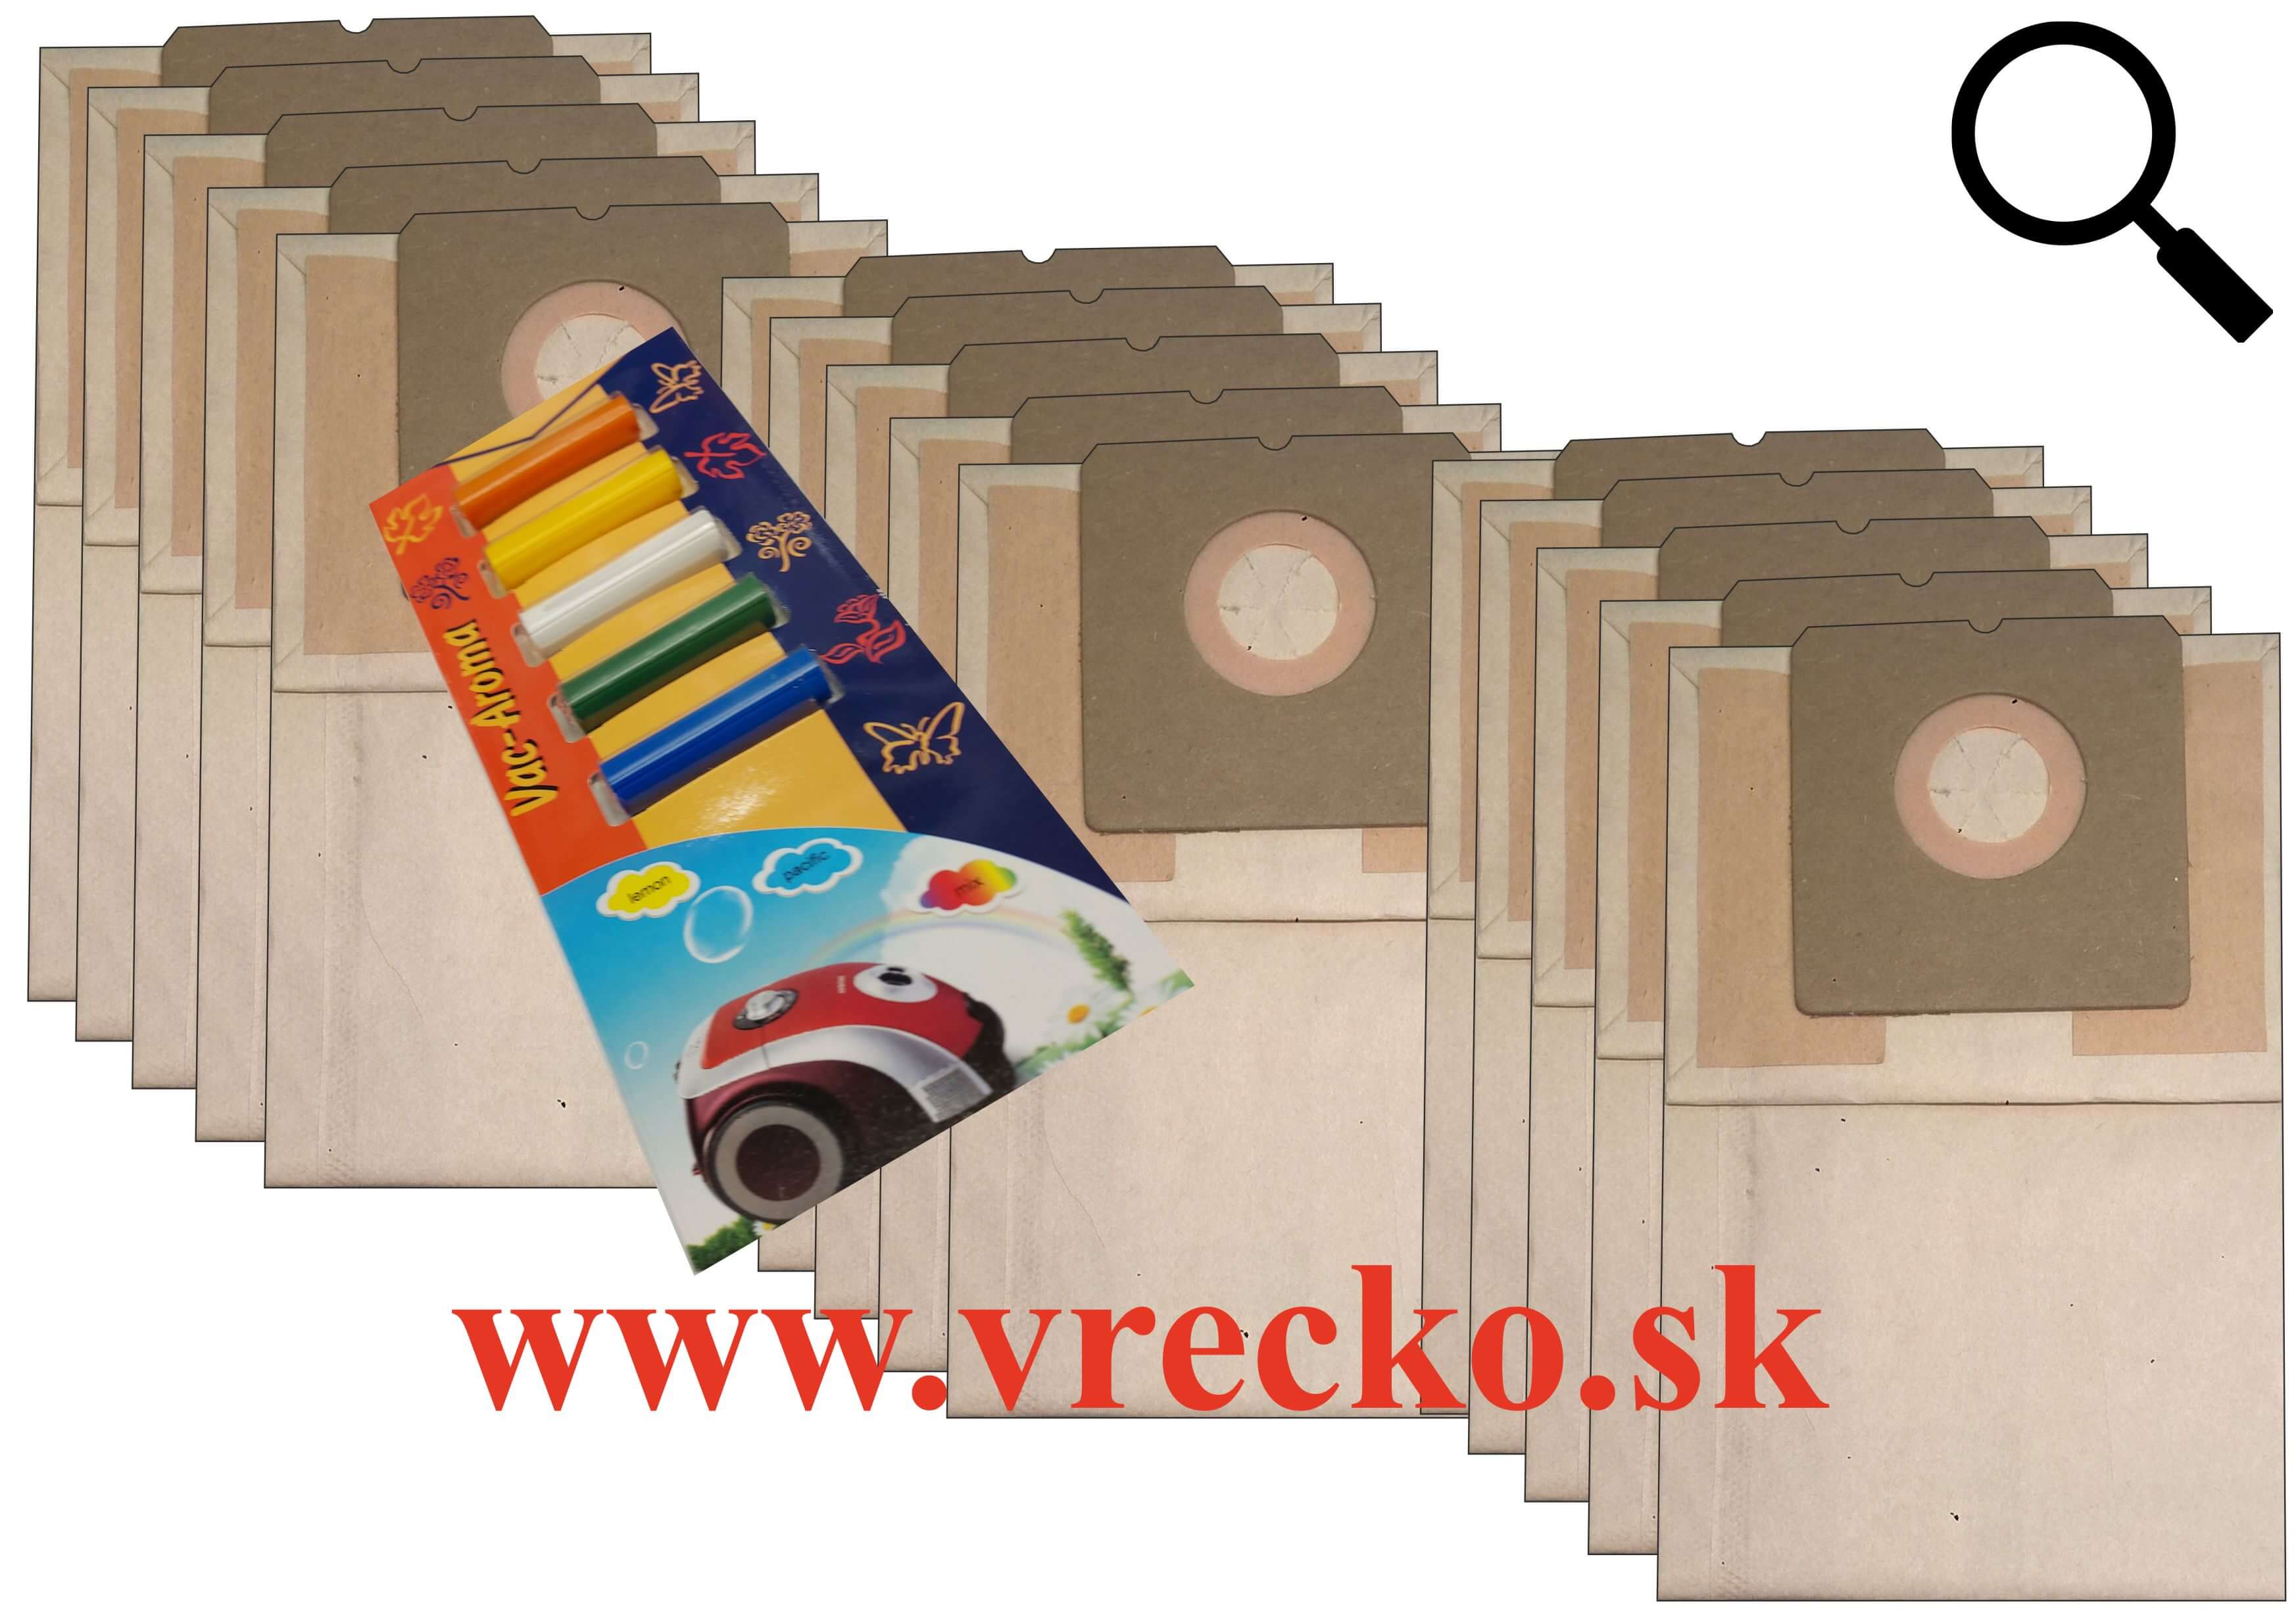 Sencor SVC 45 GR - XL zvýhodnené balenie papierových vreciek do vysávača + 5 ks vôní do vysávačov MIX ZDARMA za cenu 3,99 (celkovo vreciek 15 ks)